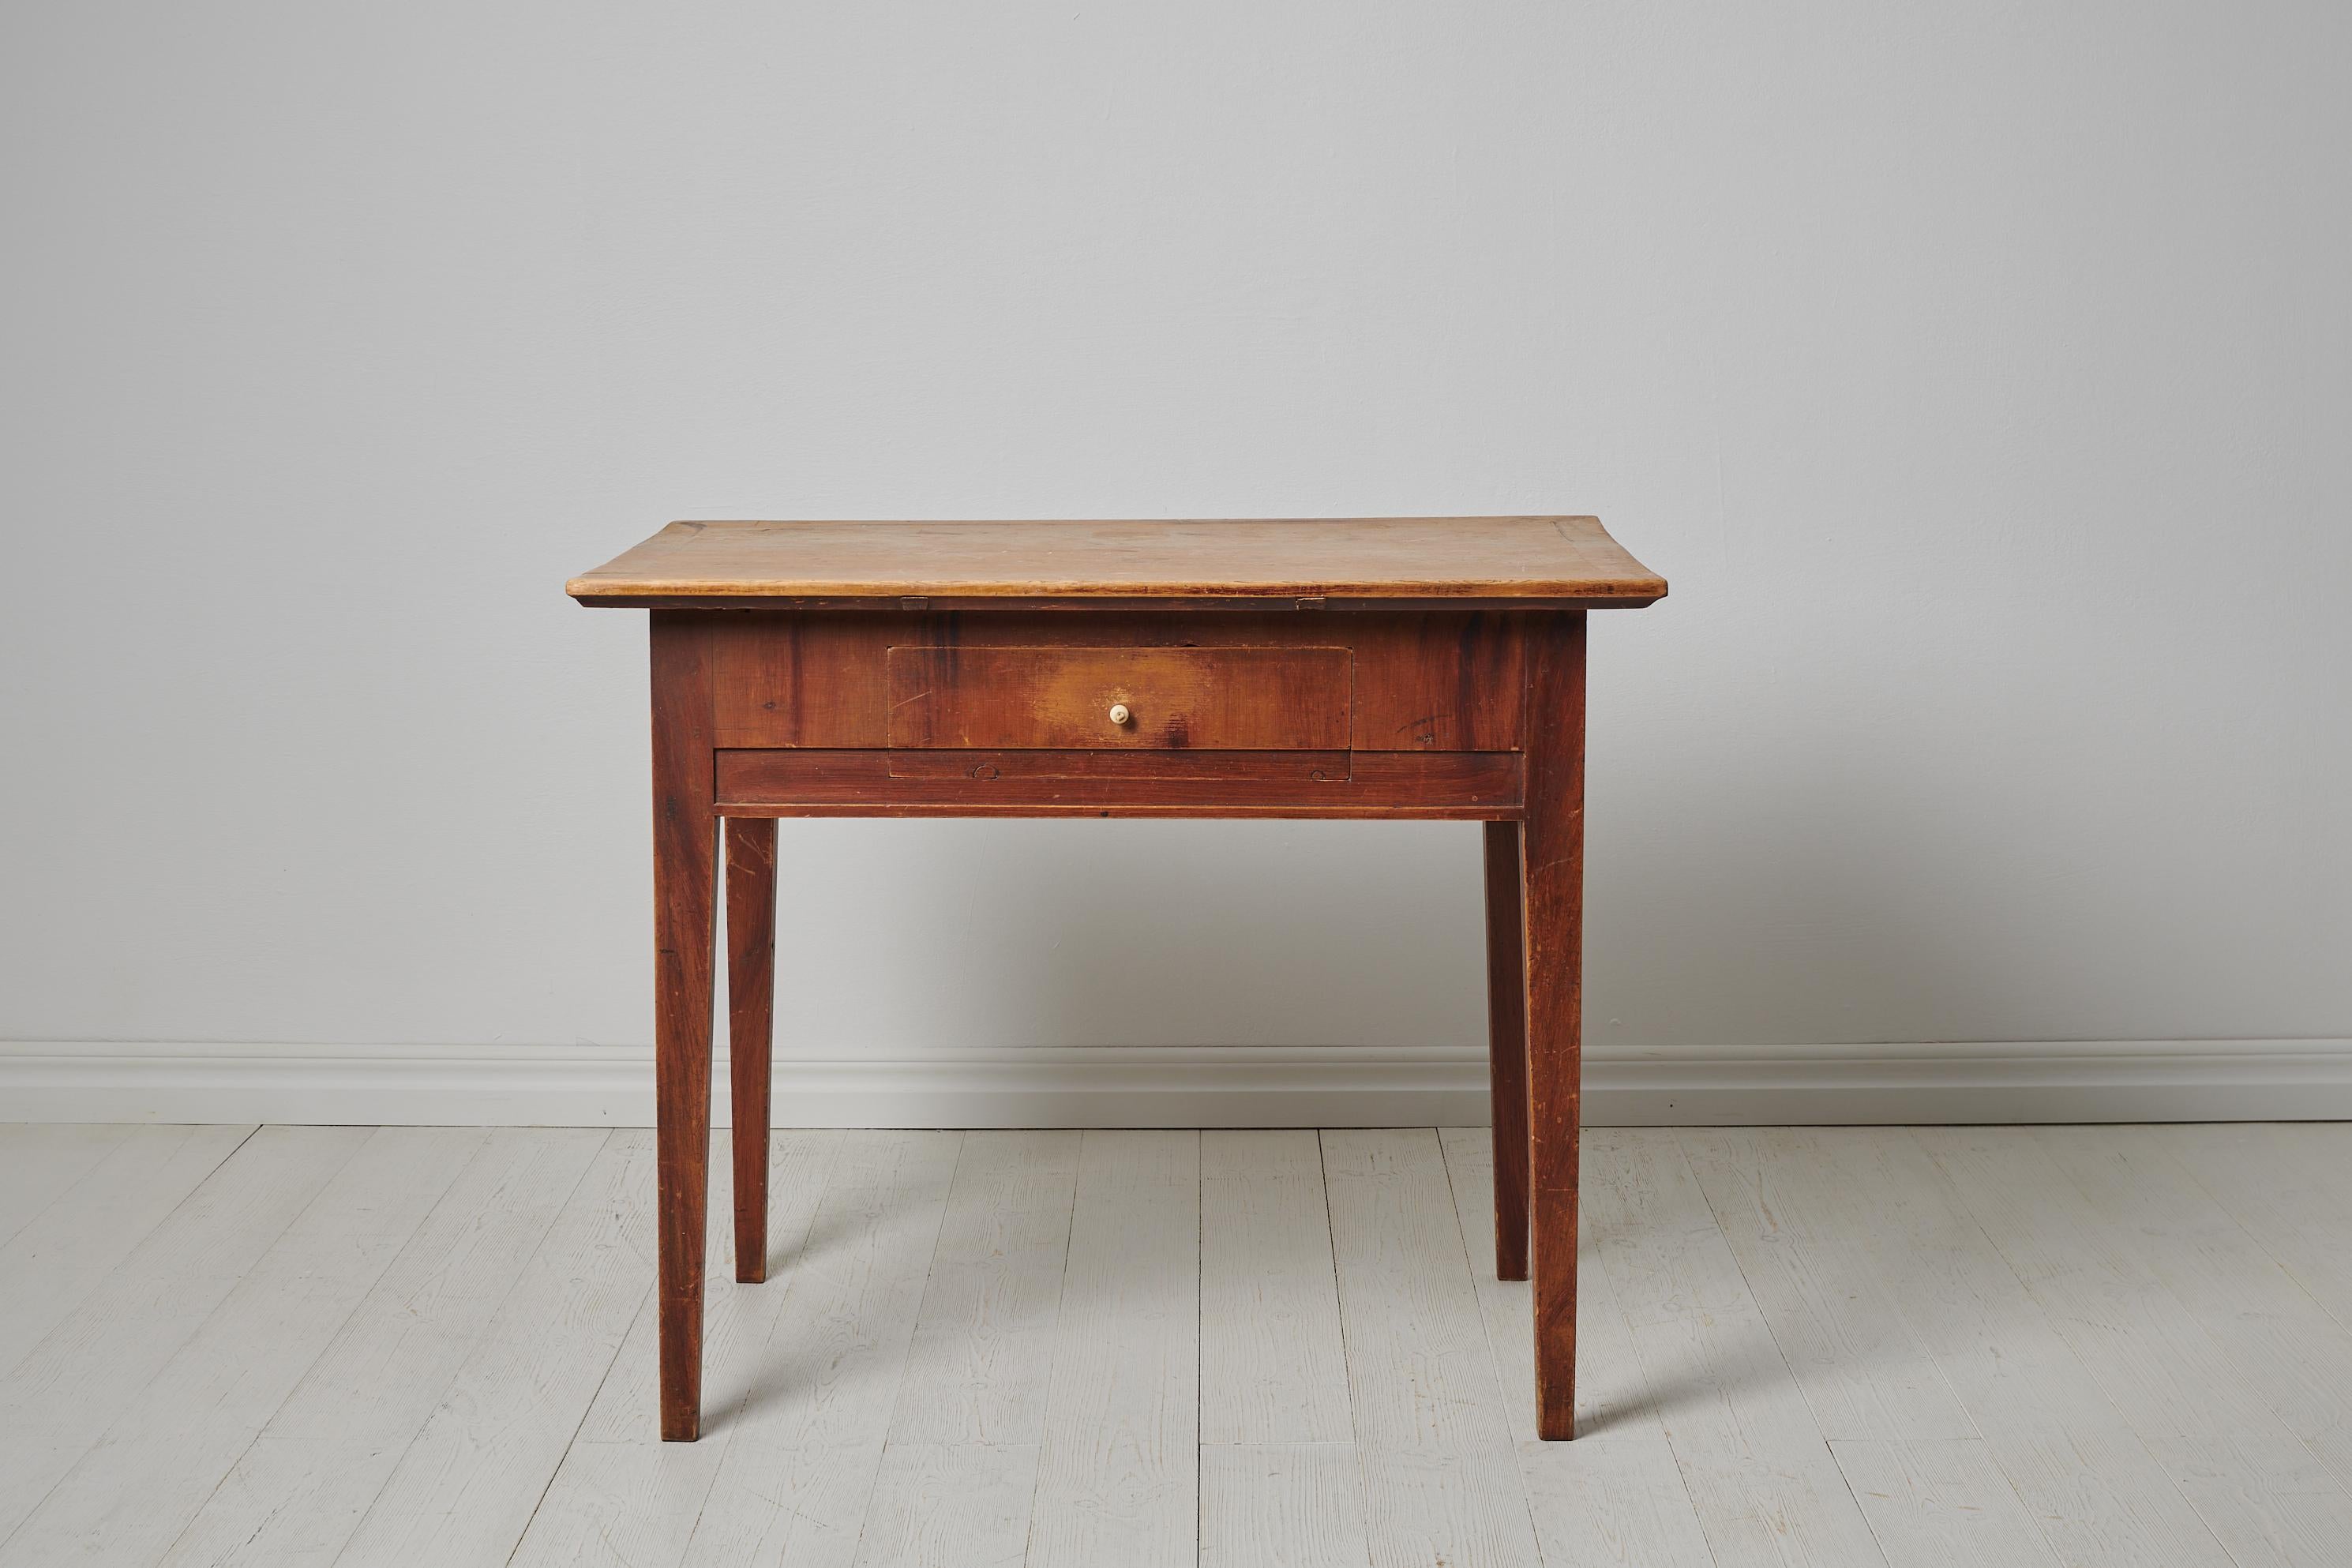 Volkstümlicher Landhaustisch aus Nordschweden, hergestellt um 1820 bis 1840 aus Kiefer. Der Tisch ist eine authentische schwedische Landhausantiquität in unberührtem Originalzustand. Die Lackierung des Tisches ist original. Der Tisch ist in einem